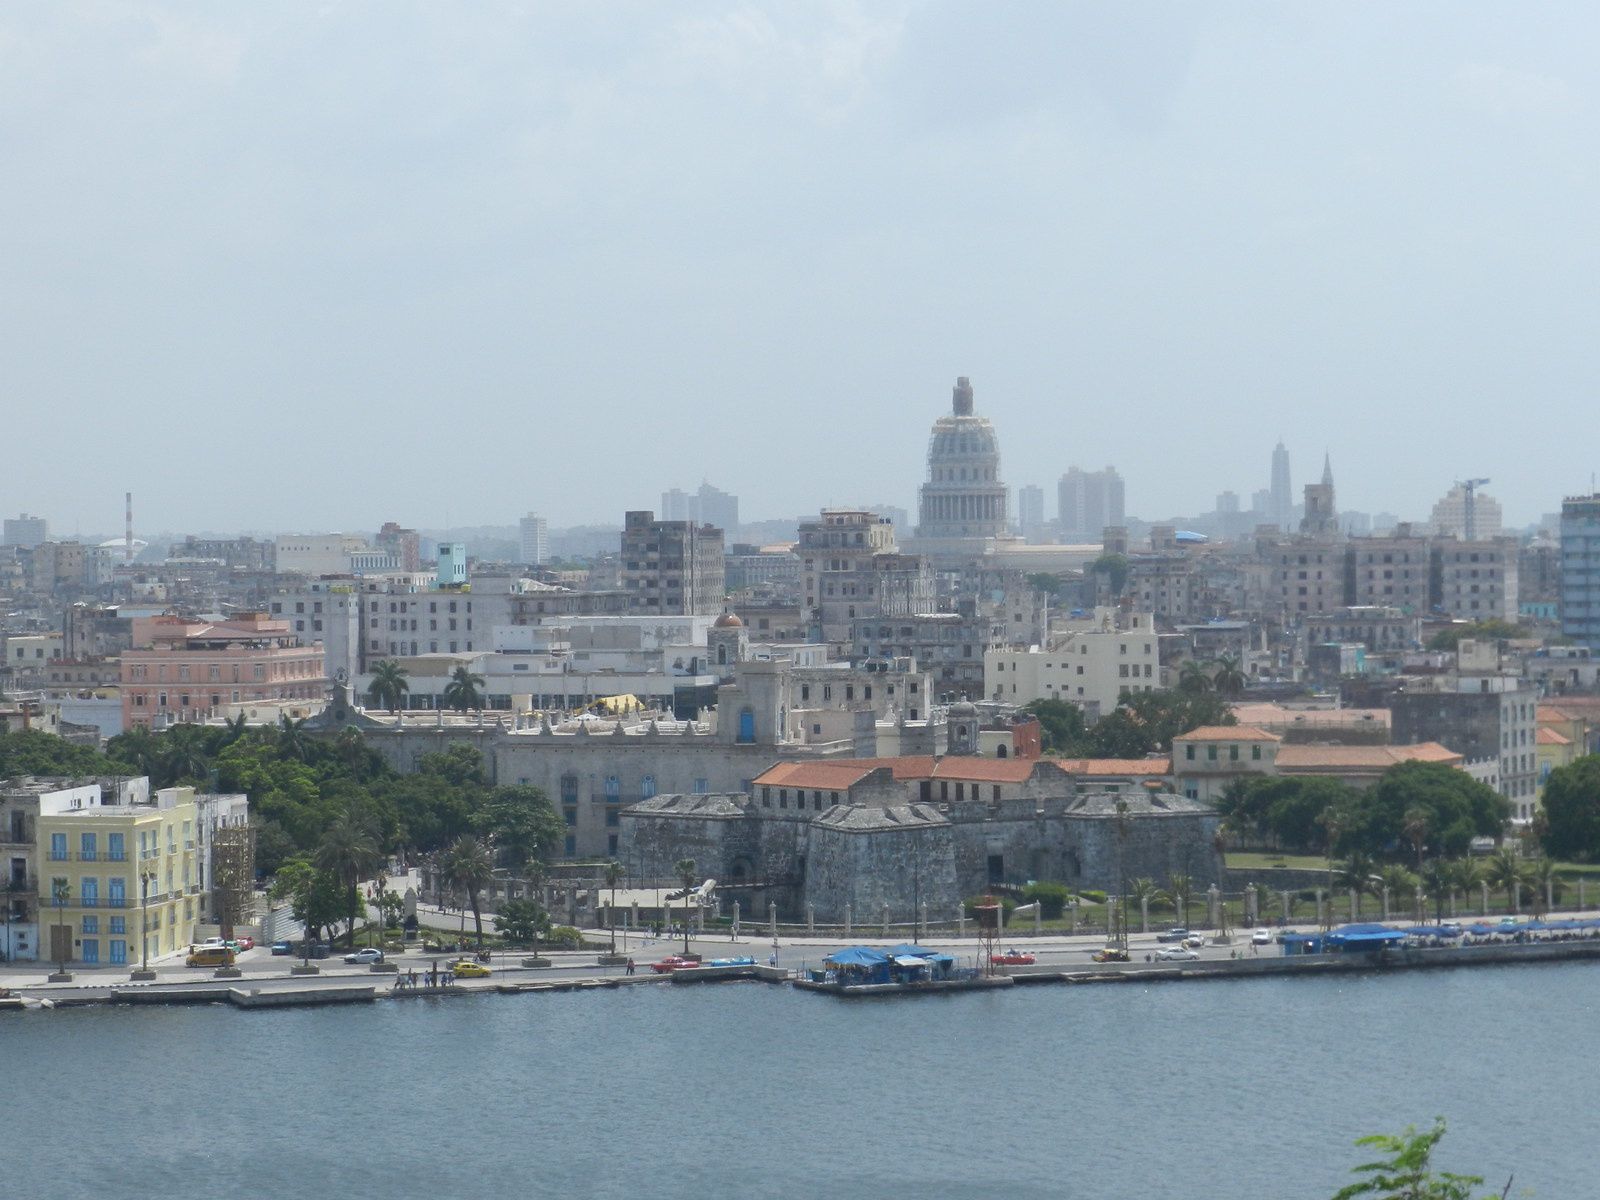 Colon, Bolivar, aduana et église orthodoxe russe, puis vue de la ville et Casa de Guevara